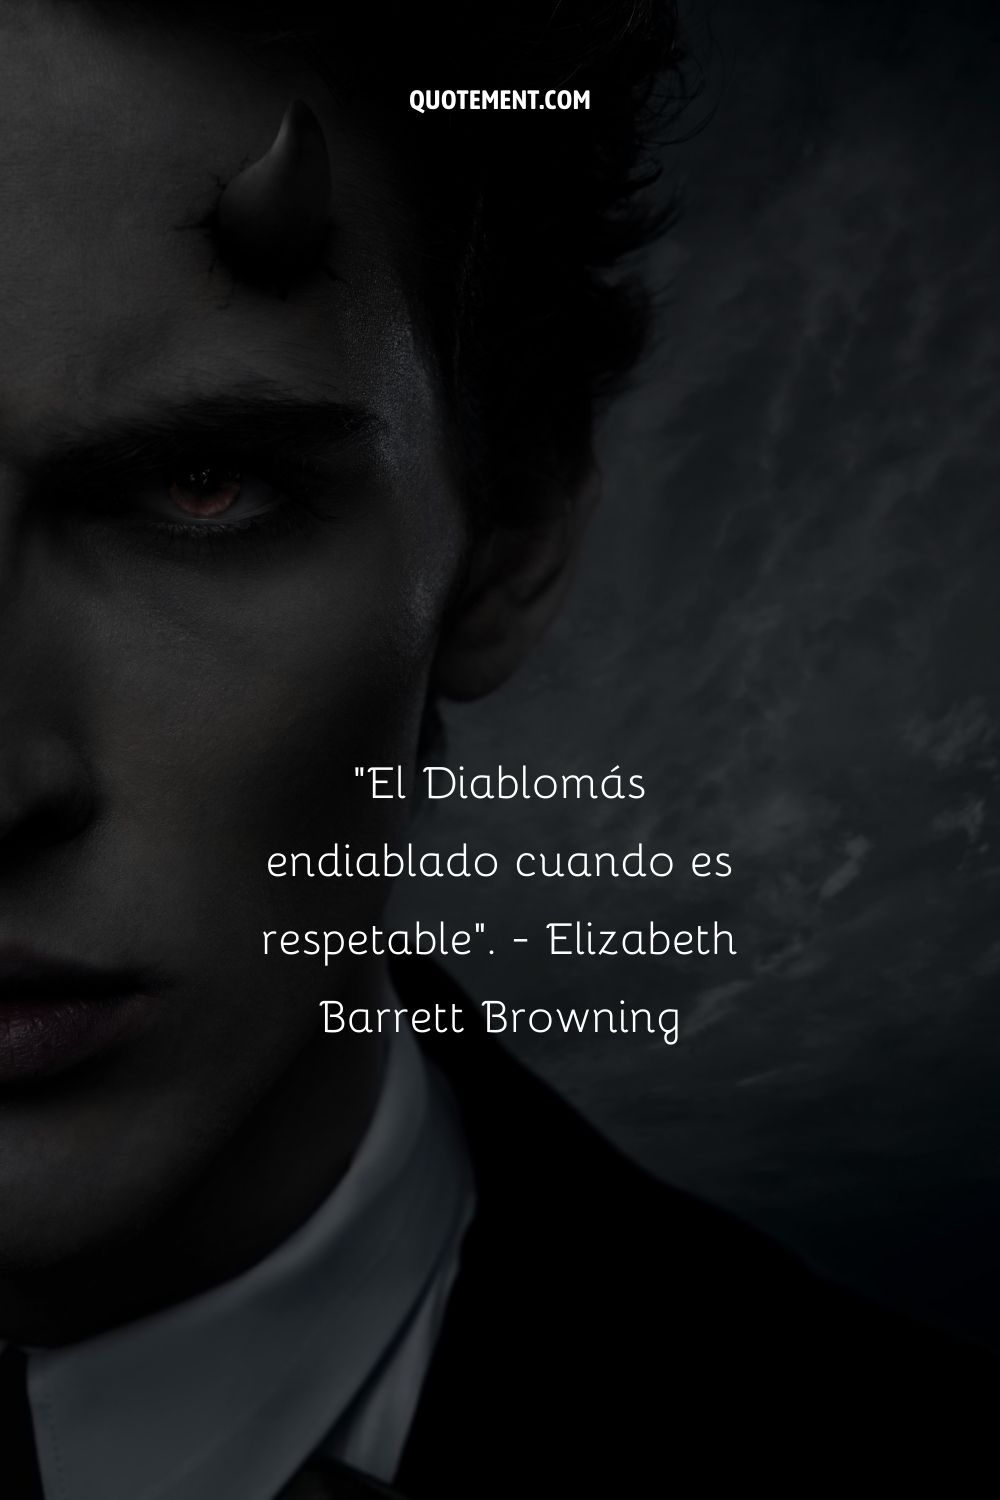 "El Diablo es más diabólico cuando es respetable". - Elizabeth Barrett Browning